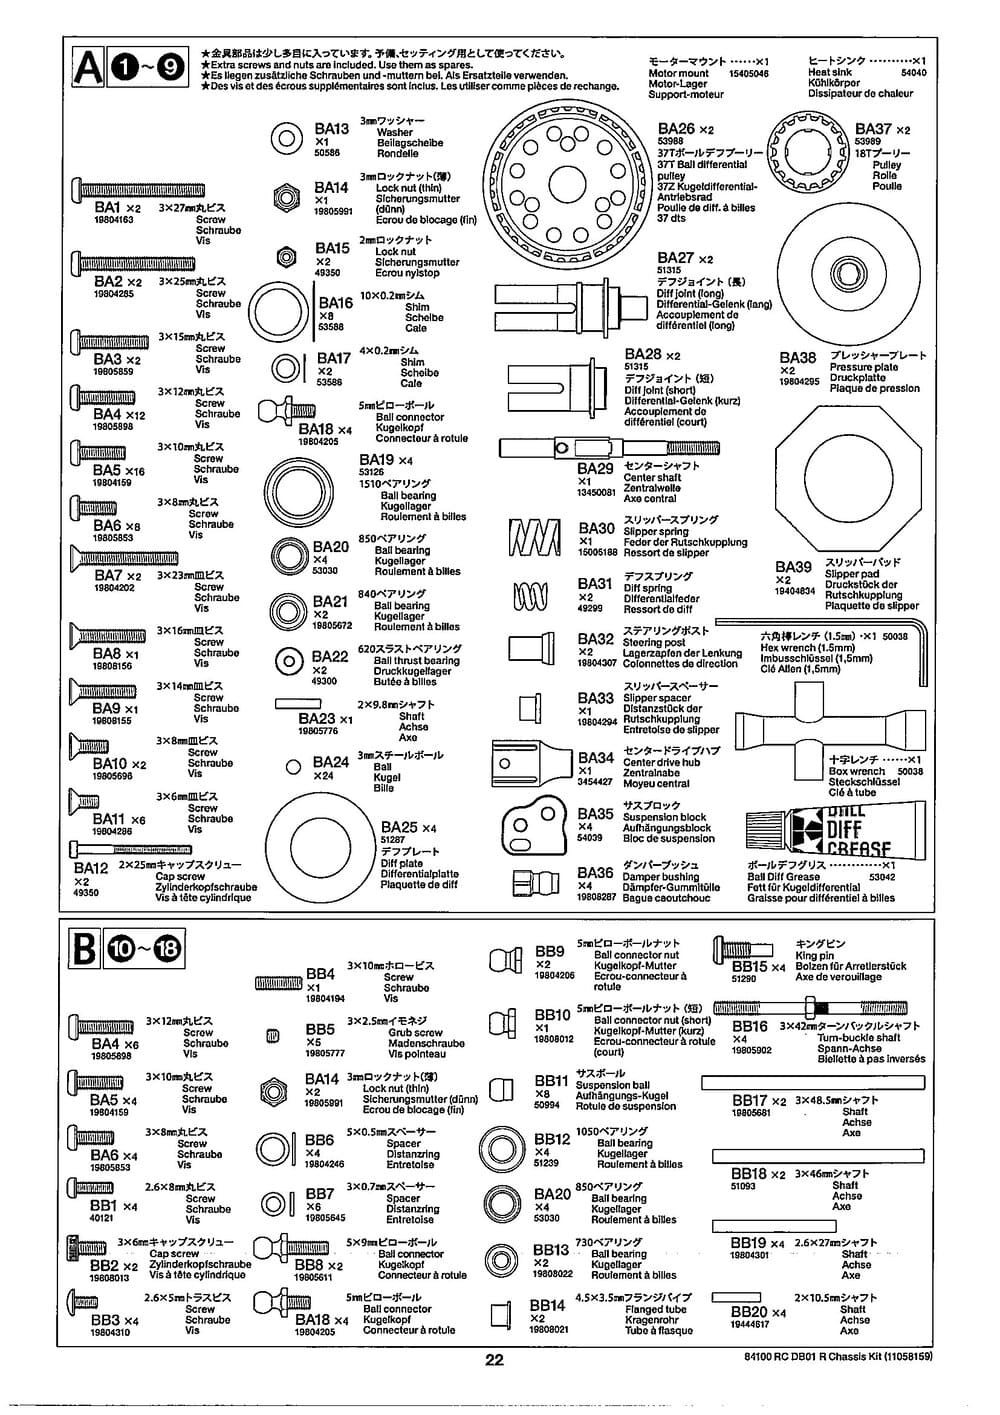 Tamiya - DB-01R Chassis - Manual - Page 22